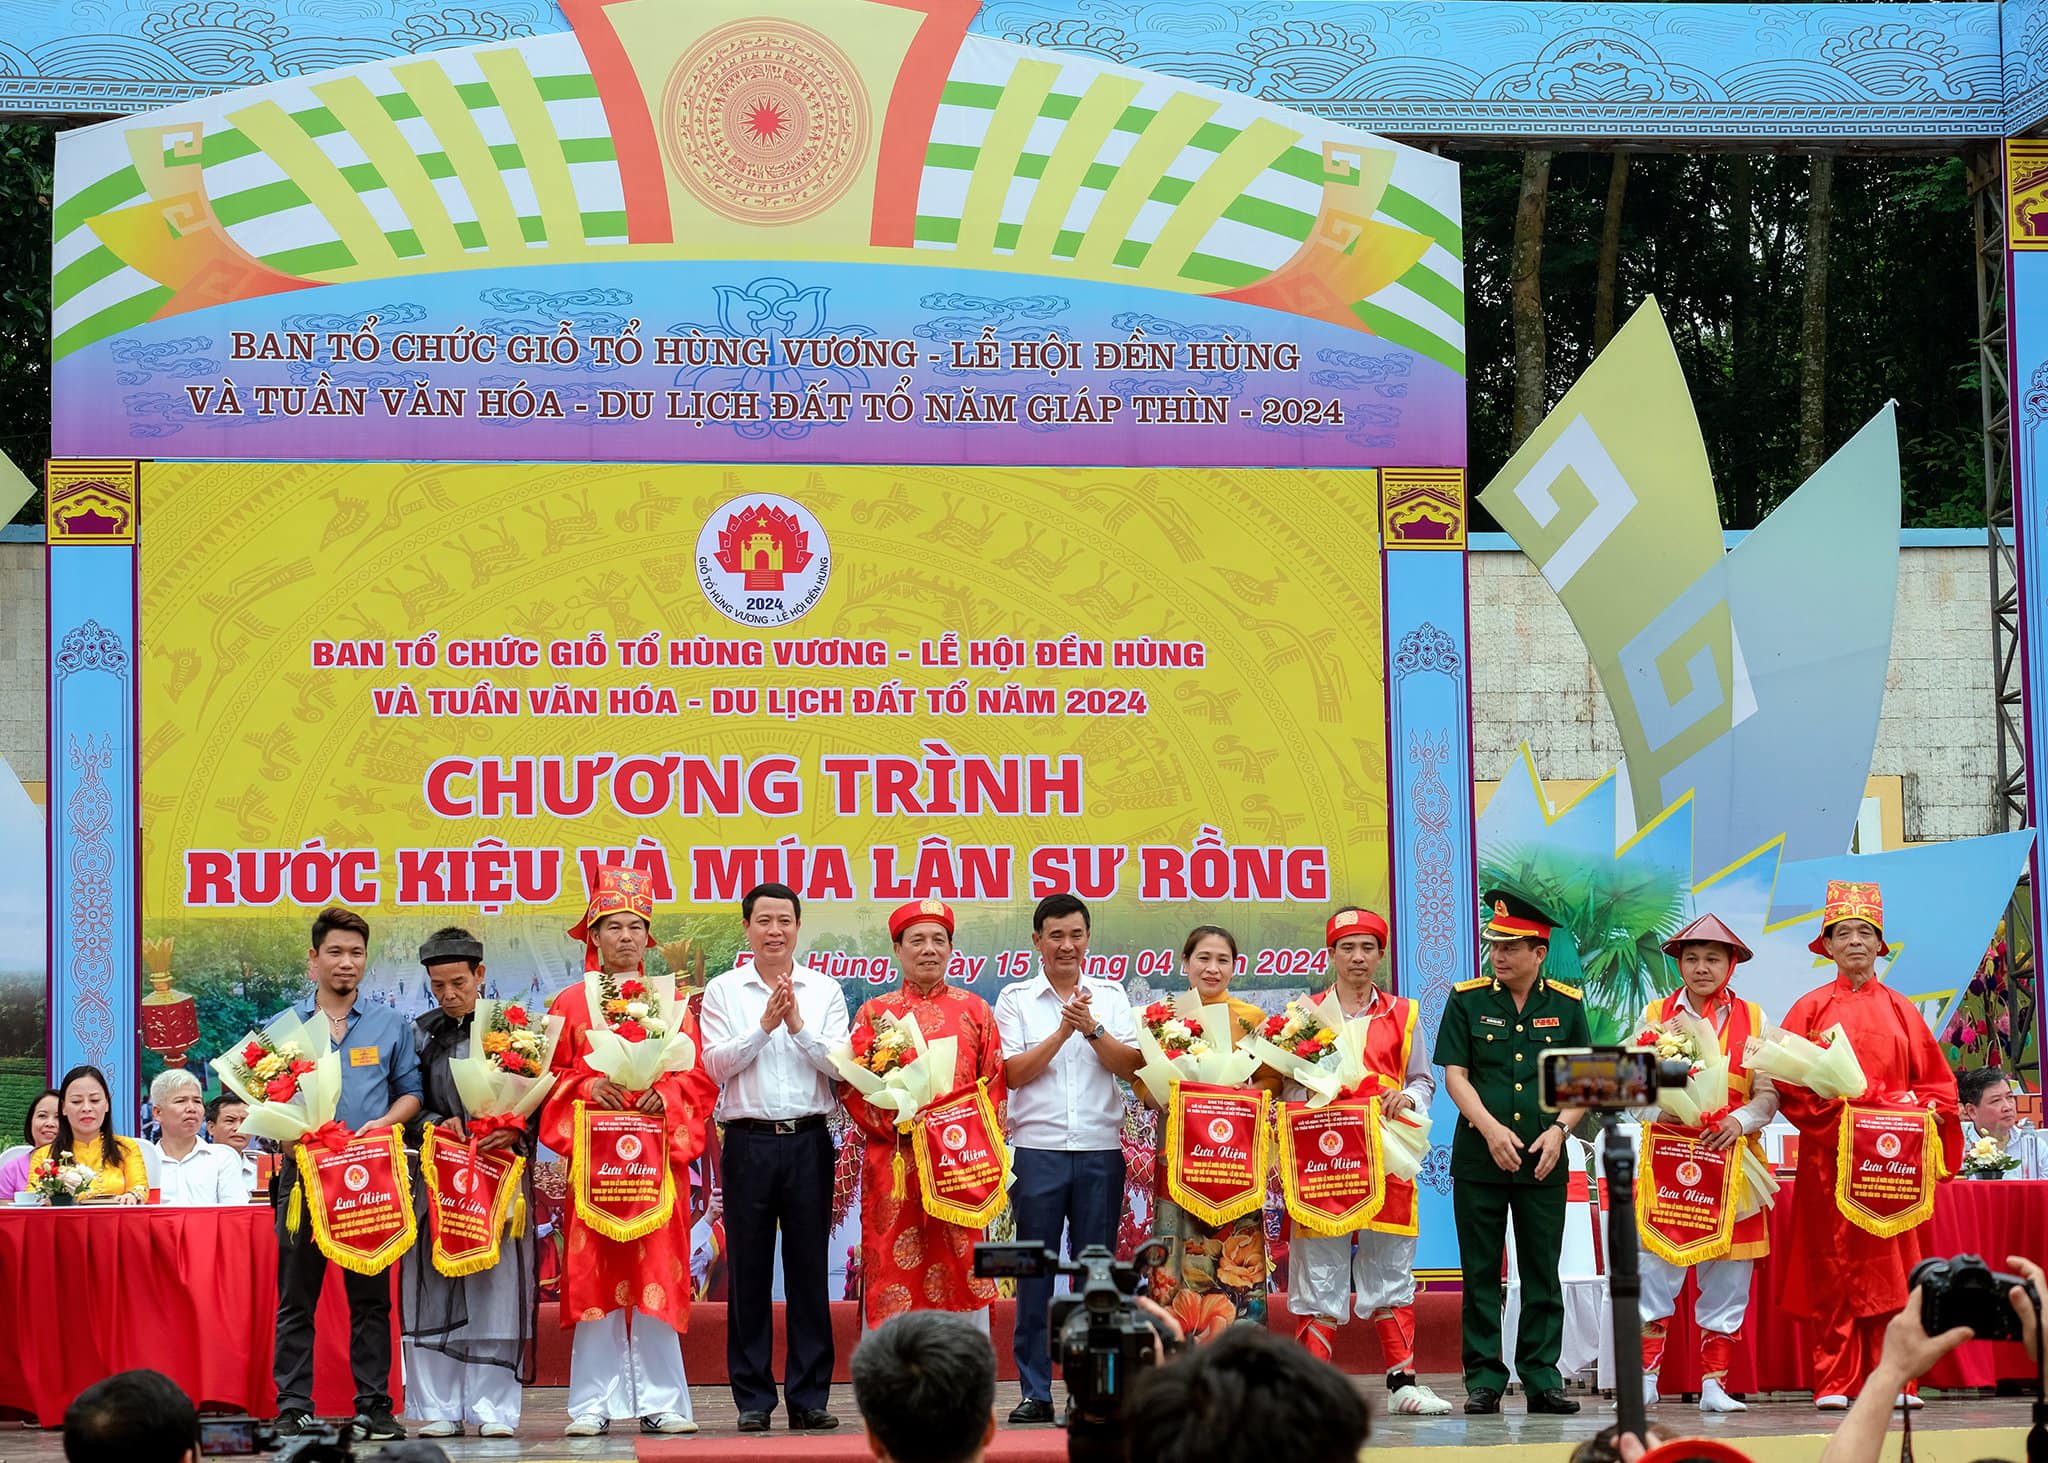 Chương trình rước kiệu và múa lân sư rồng của CLB Lân sư rồng tại lễ hội đền Hùng